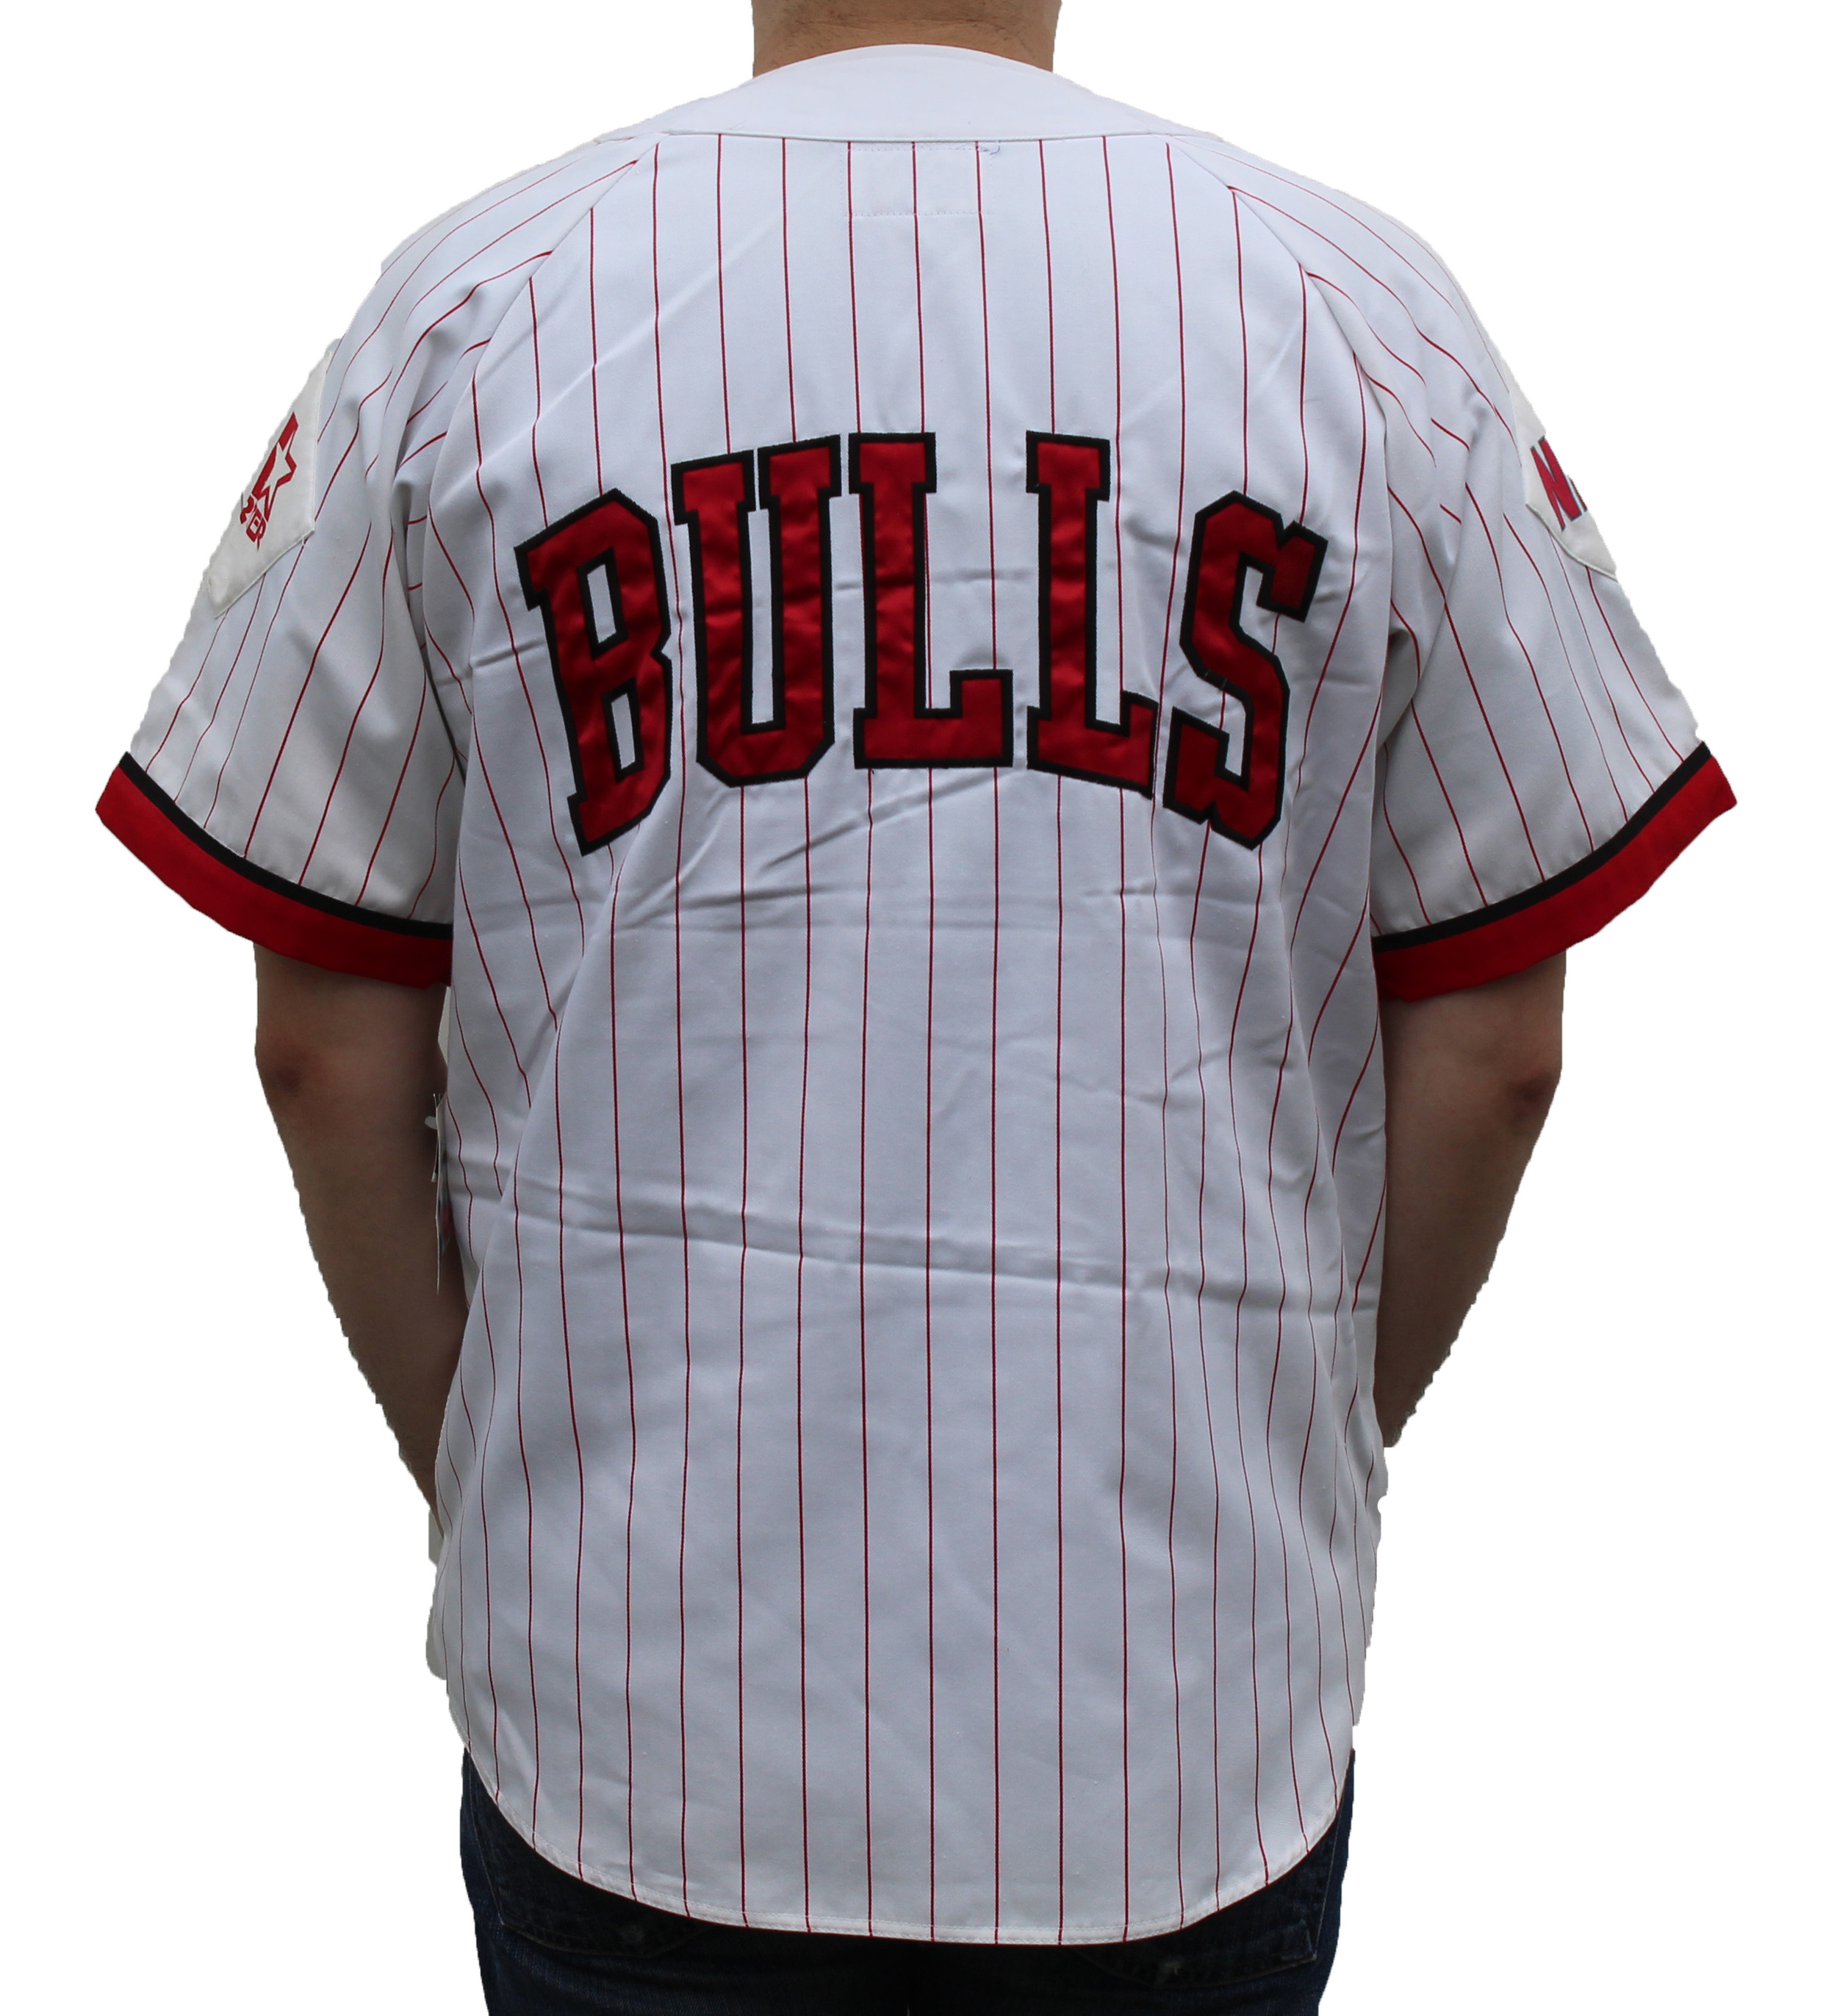 90s baseball jersey